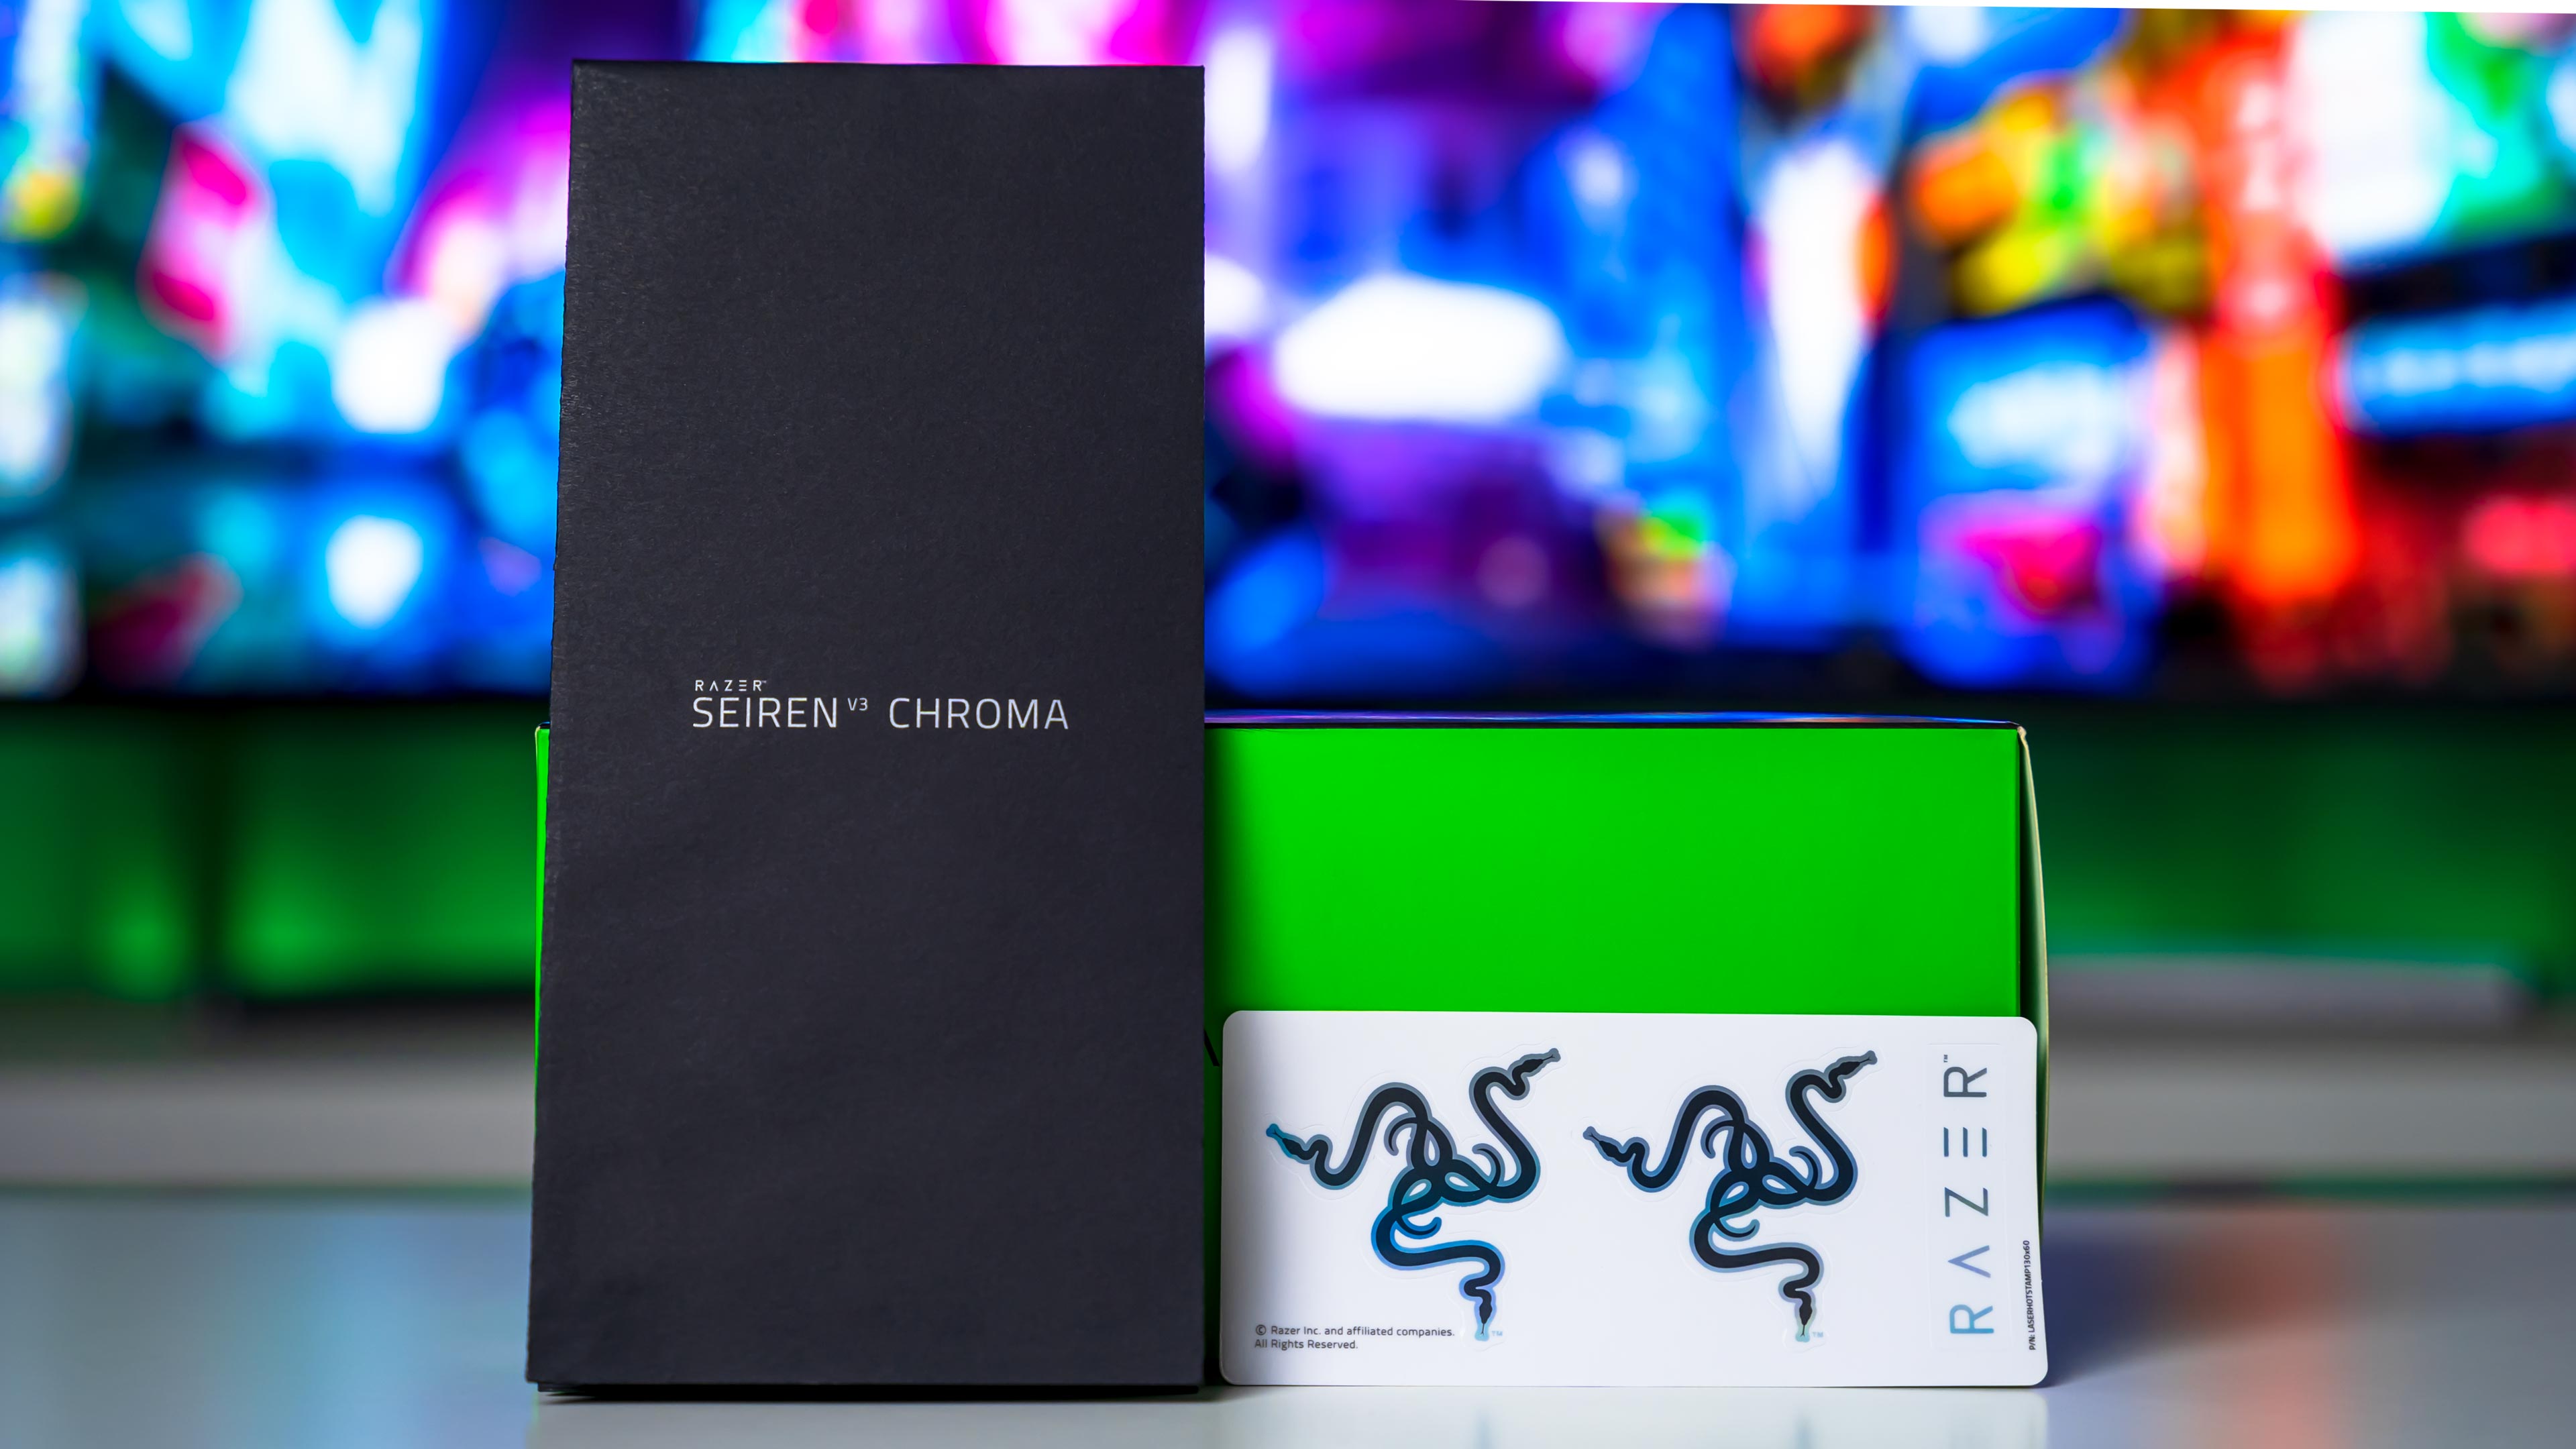 Razer Seiren V3 Chroma Box (8)